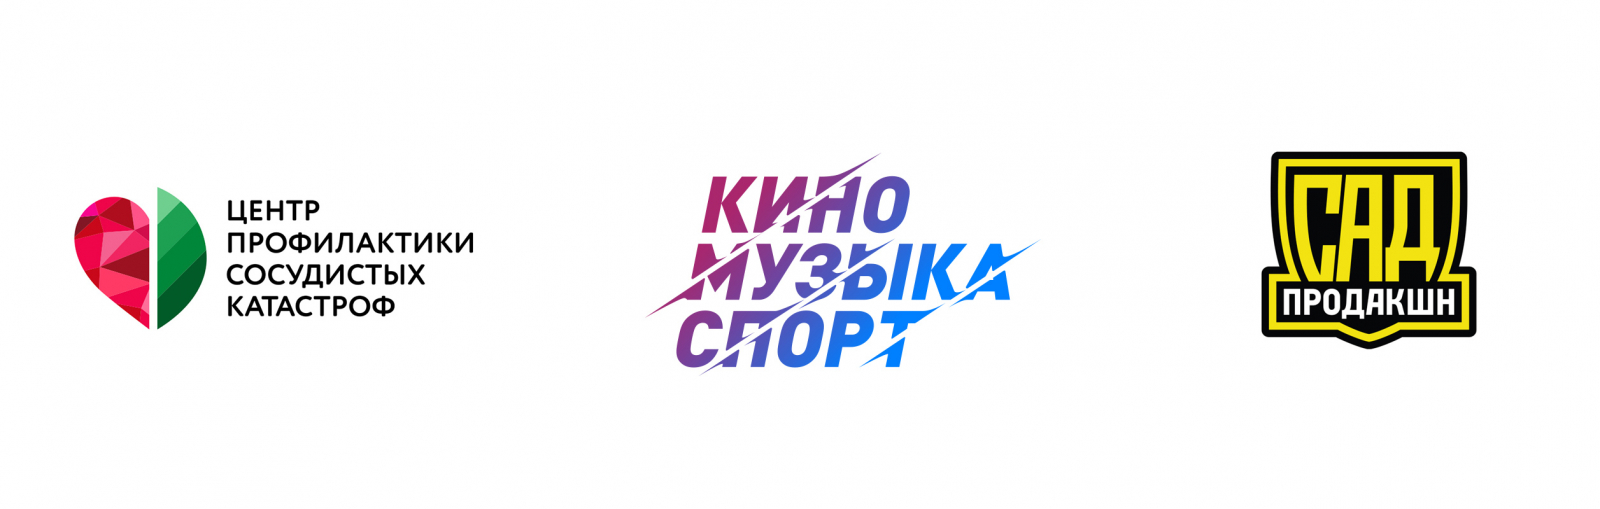 Логотипы. Дизайнер Елена Дождикова